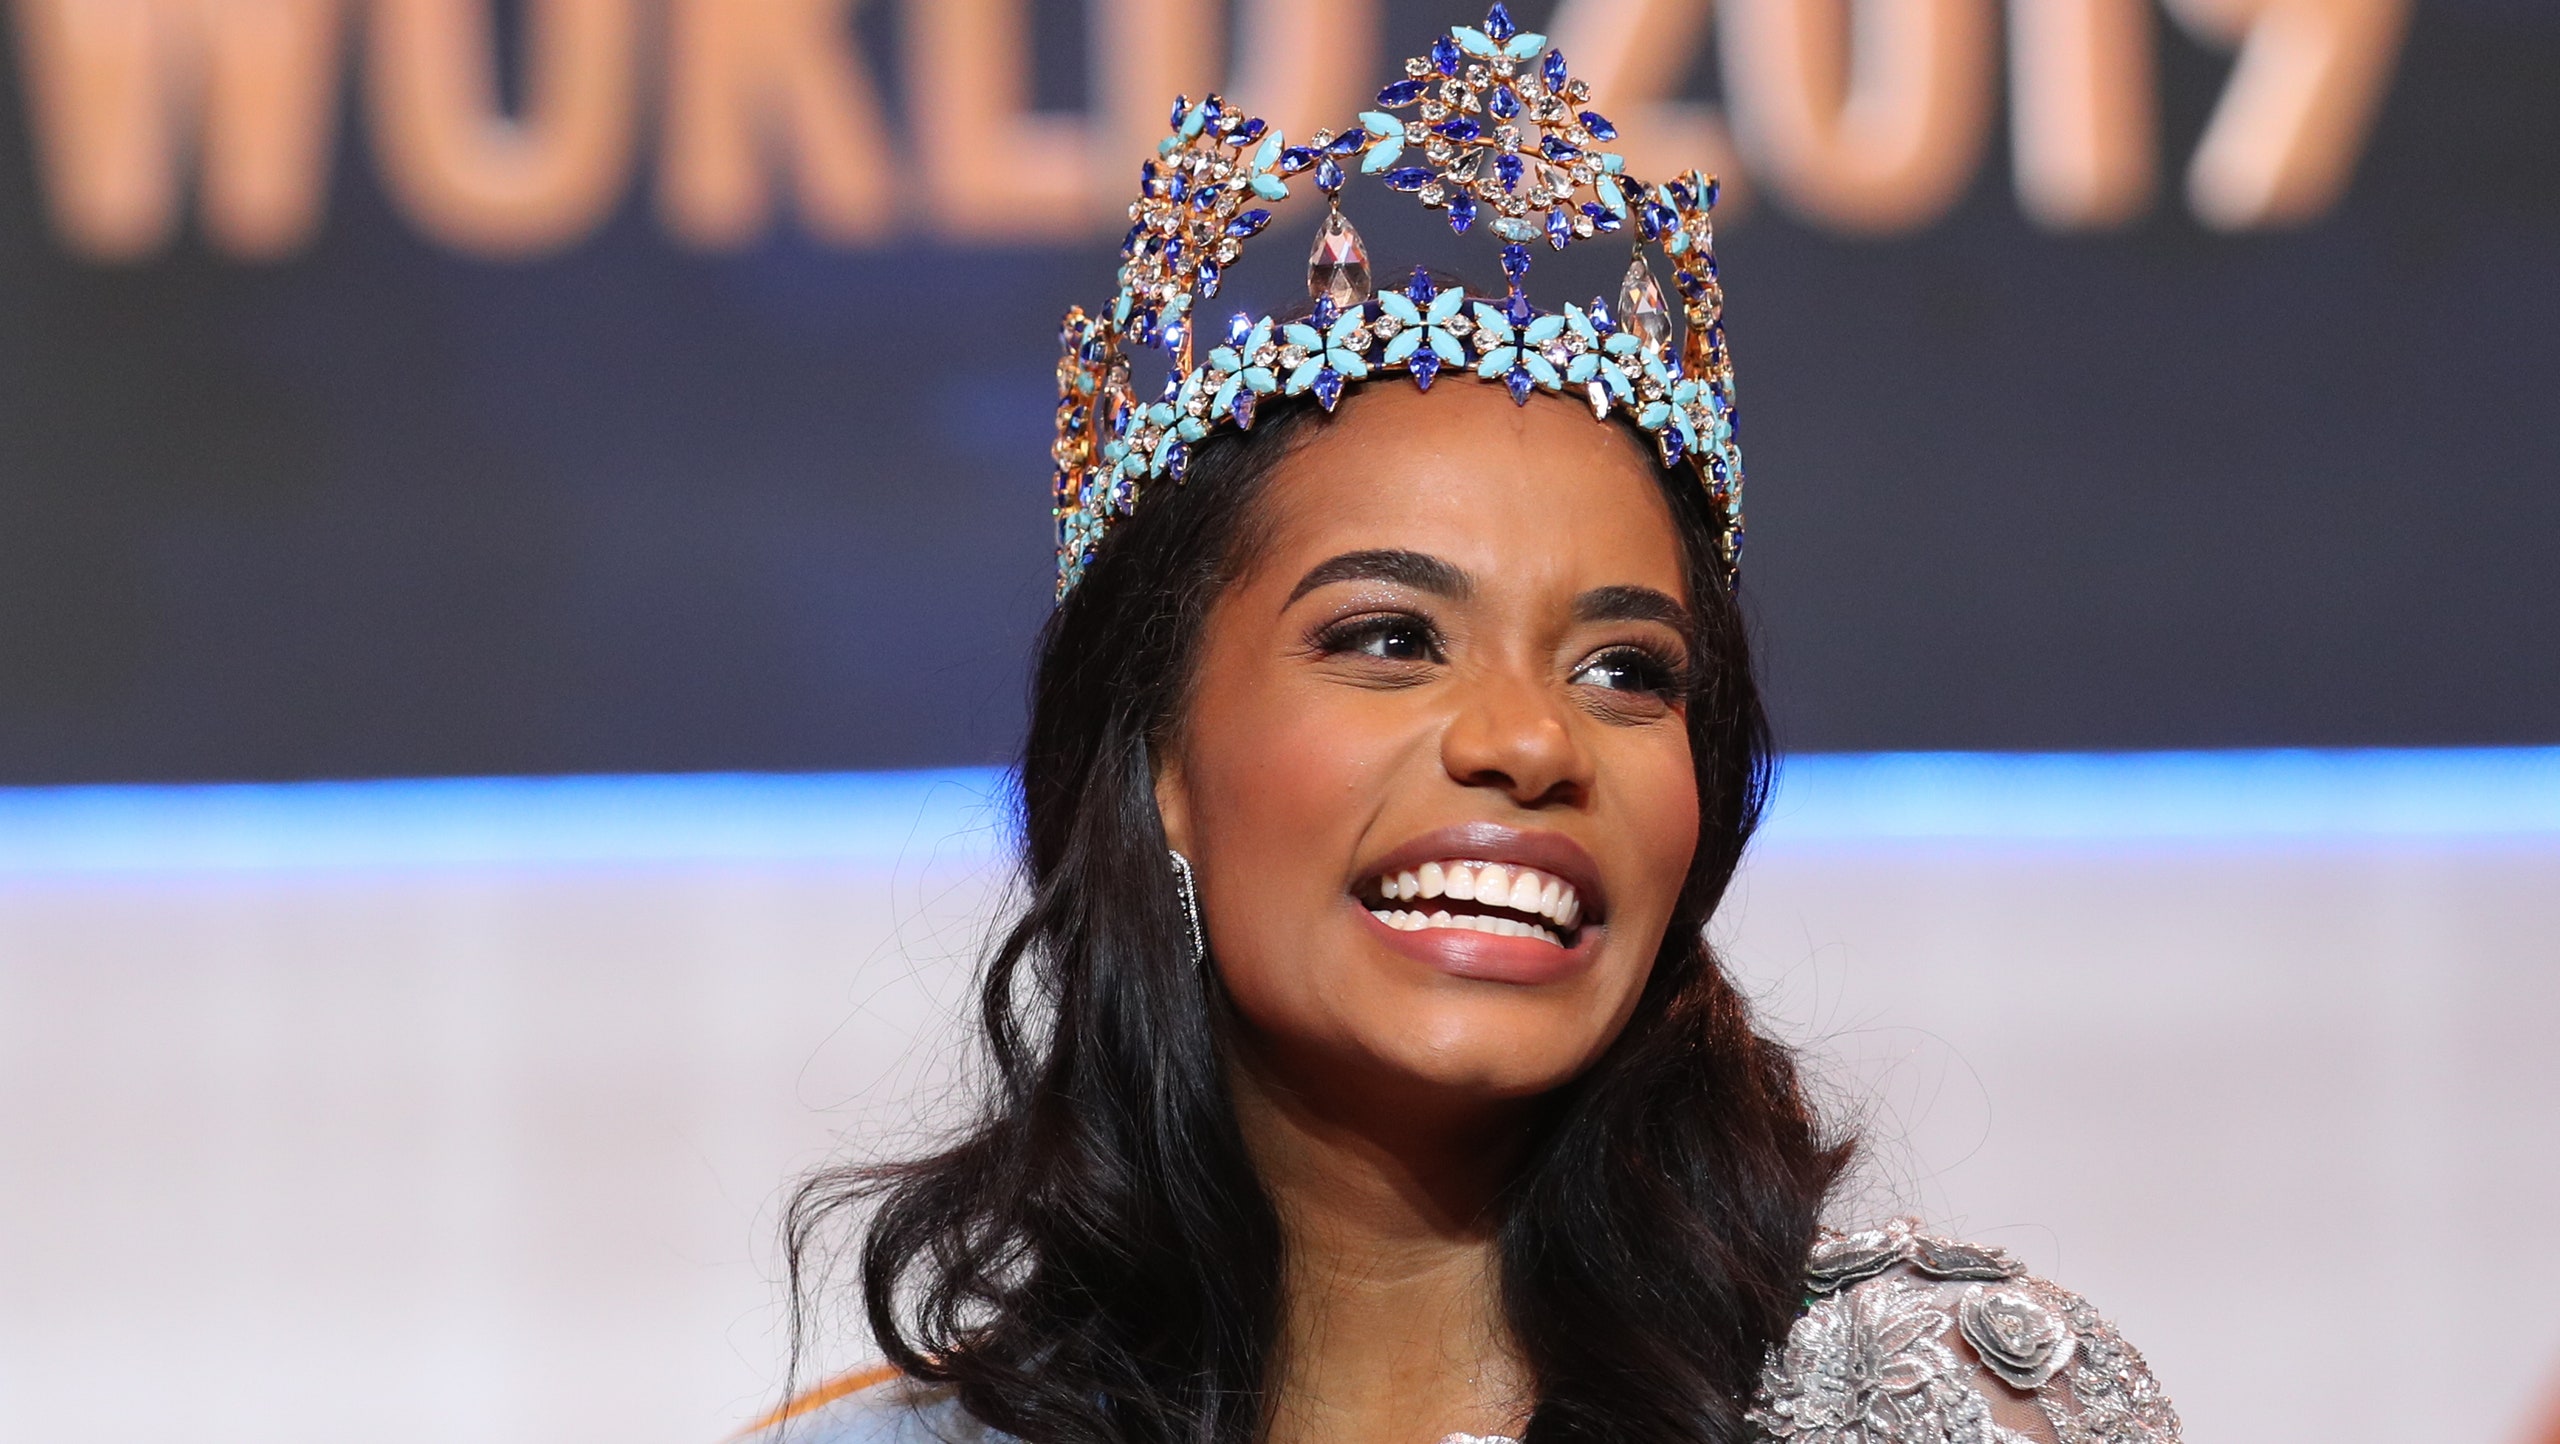 «Мисс мира» 2019 стала 23летняя ТониЭнн Сингх из Ямайки